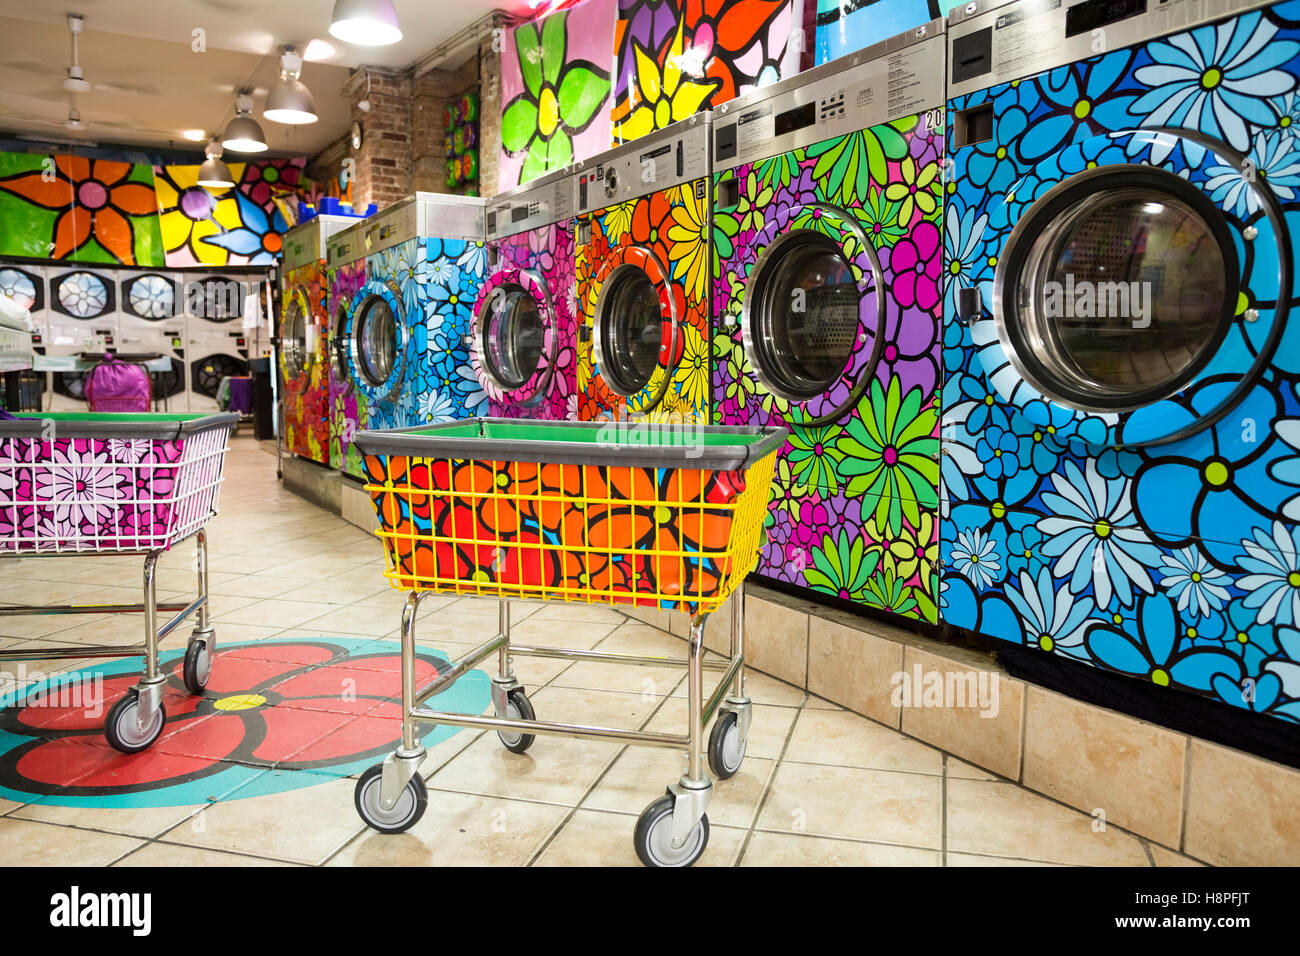 Unico verniciato retrò lavatrice / asciugatrice in un locale lavanderia, New York City, NY, STATI UNITI D'AMERICA Foto Stock